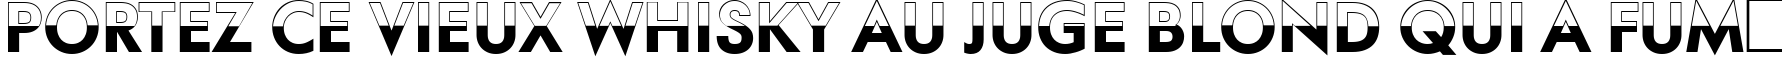 Пример написания шрифтом a_FuturaOrtoTitulB&W Bold текста на французском